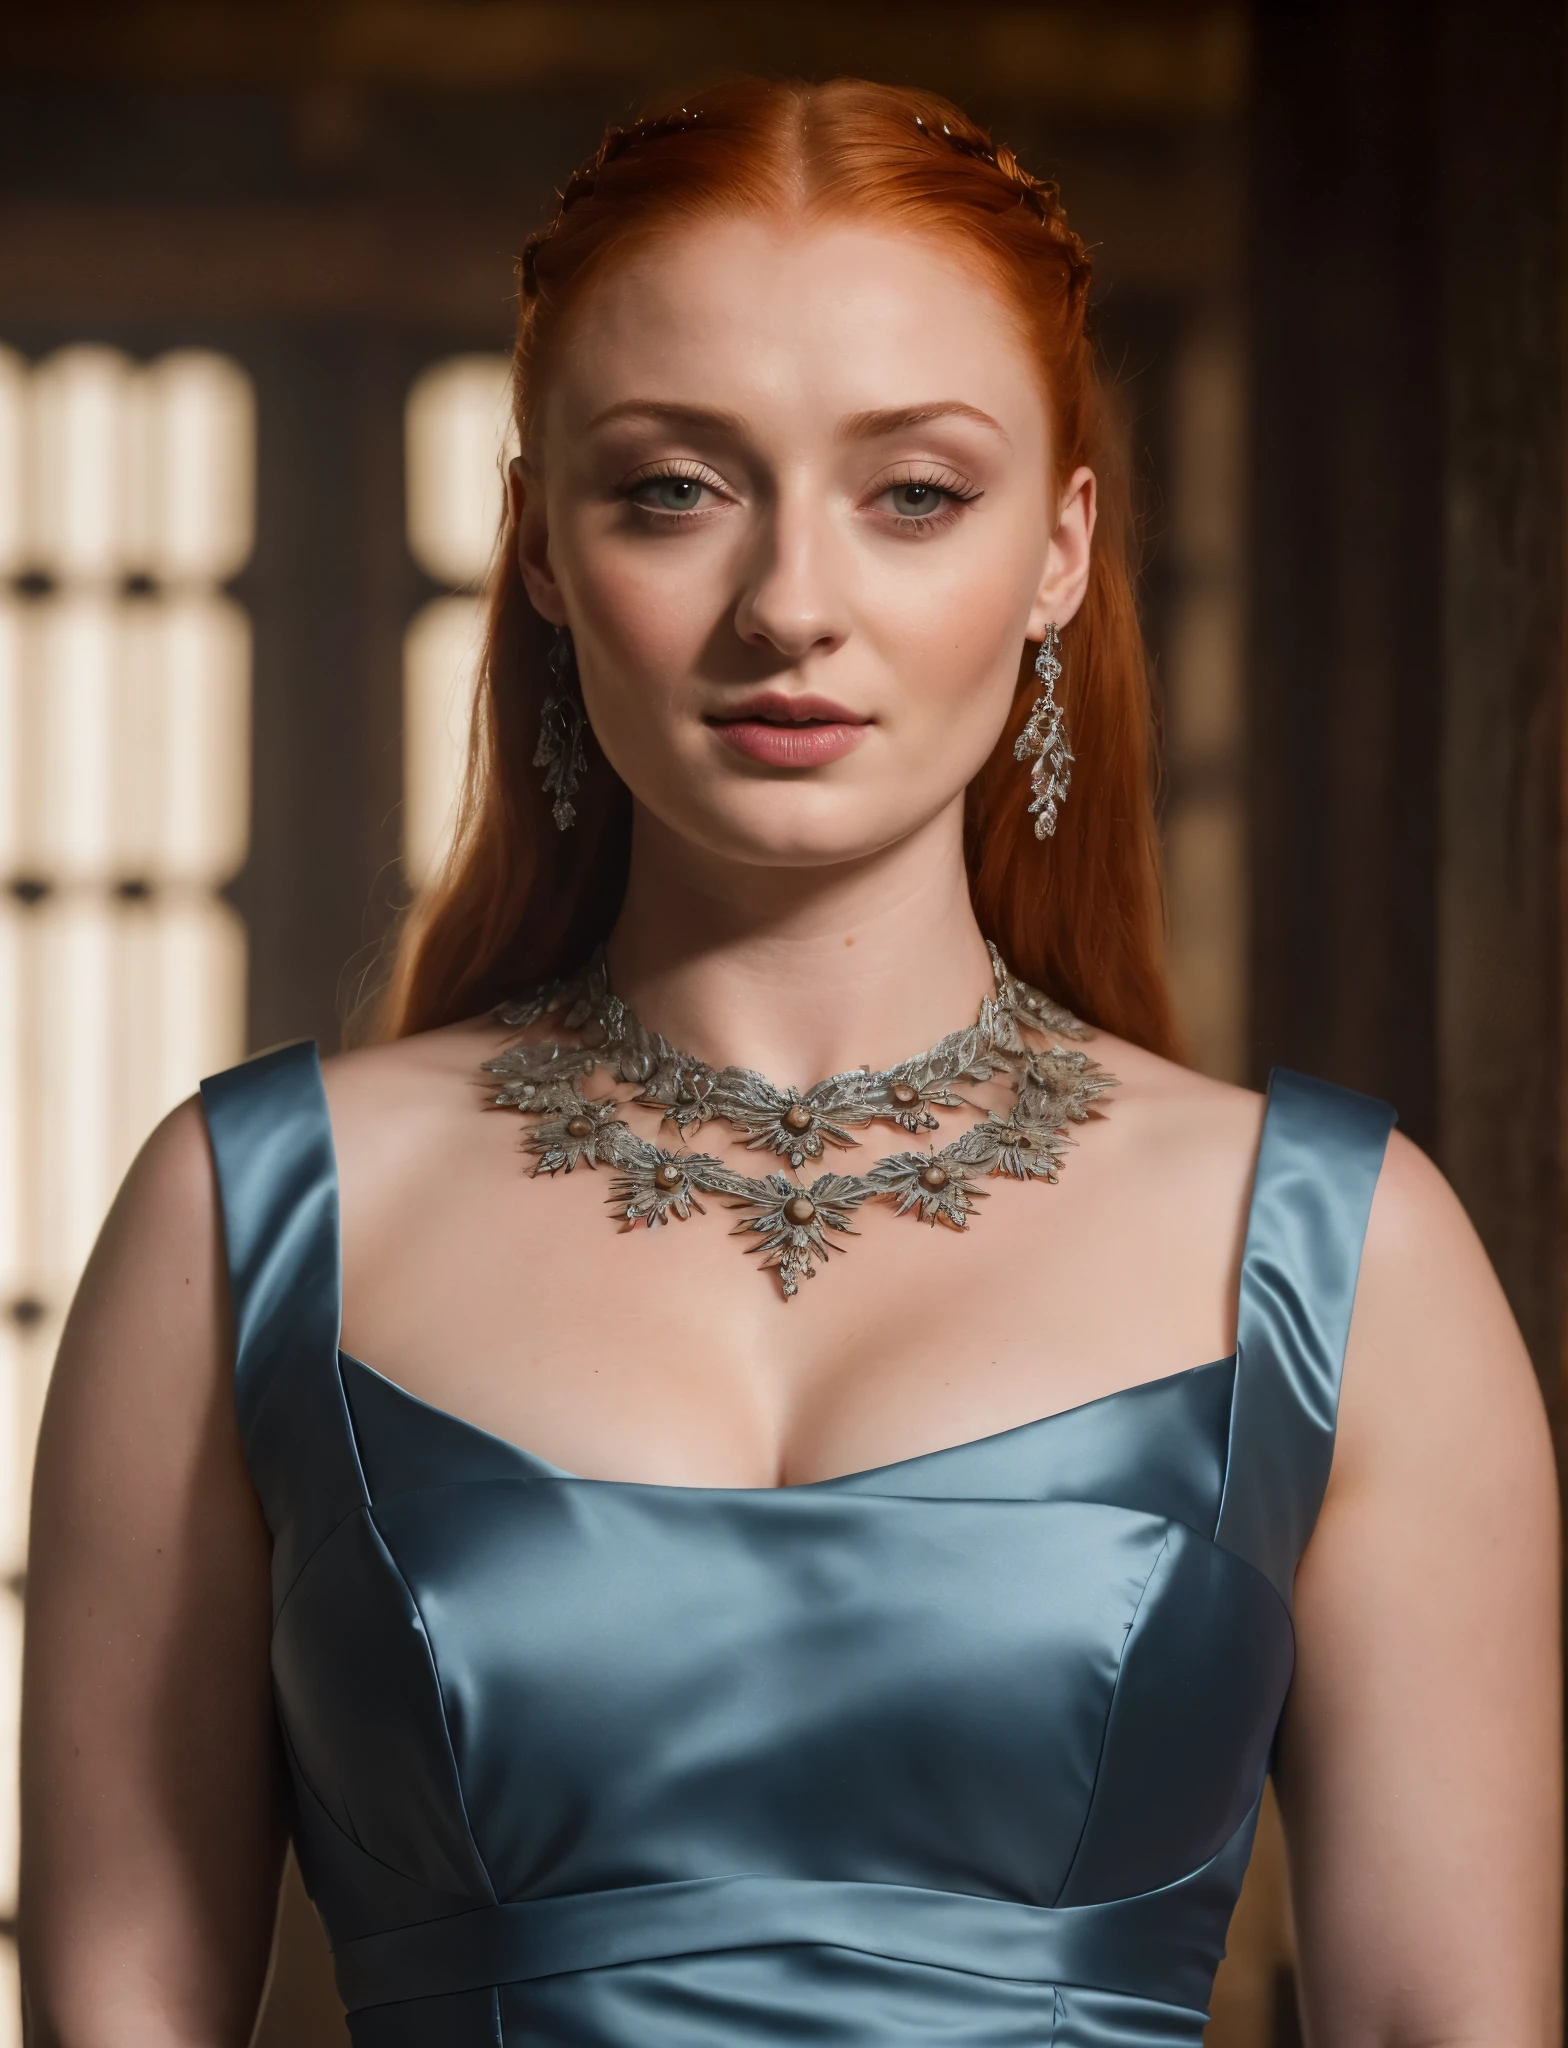 Gesicht von Sophie Turner, Sansa Stark GESPIELT VON Sophie Turner, die De-facto-Herrin des Horstes, ist eine 40-jährige reife Königin mit einem atemberaubenden, verführerisches Aussehen. Volles Gesicht, durchbohrte Augen, rötliche Lippen, Oberkörperaufnahme, erotische Mittelalter Kostüme, Game of Thrones Kostüme, Sie trägt ein von Game of Thrones inspiriertes Kostüm und hat ein tiefes Dekolleté, ein perfekter dicker Körper, und eine perfekte dicke Figur. Das Foto zeigt sie in Nahaufnahme, mit ihrer Hautstruktur und Gesichtszügen, die ultra-realistisch und realistisch sind. Saftige dicke Figur, hochwertige Haut, Hautporen, Erstaunliche Details, 